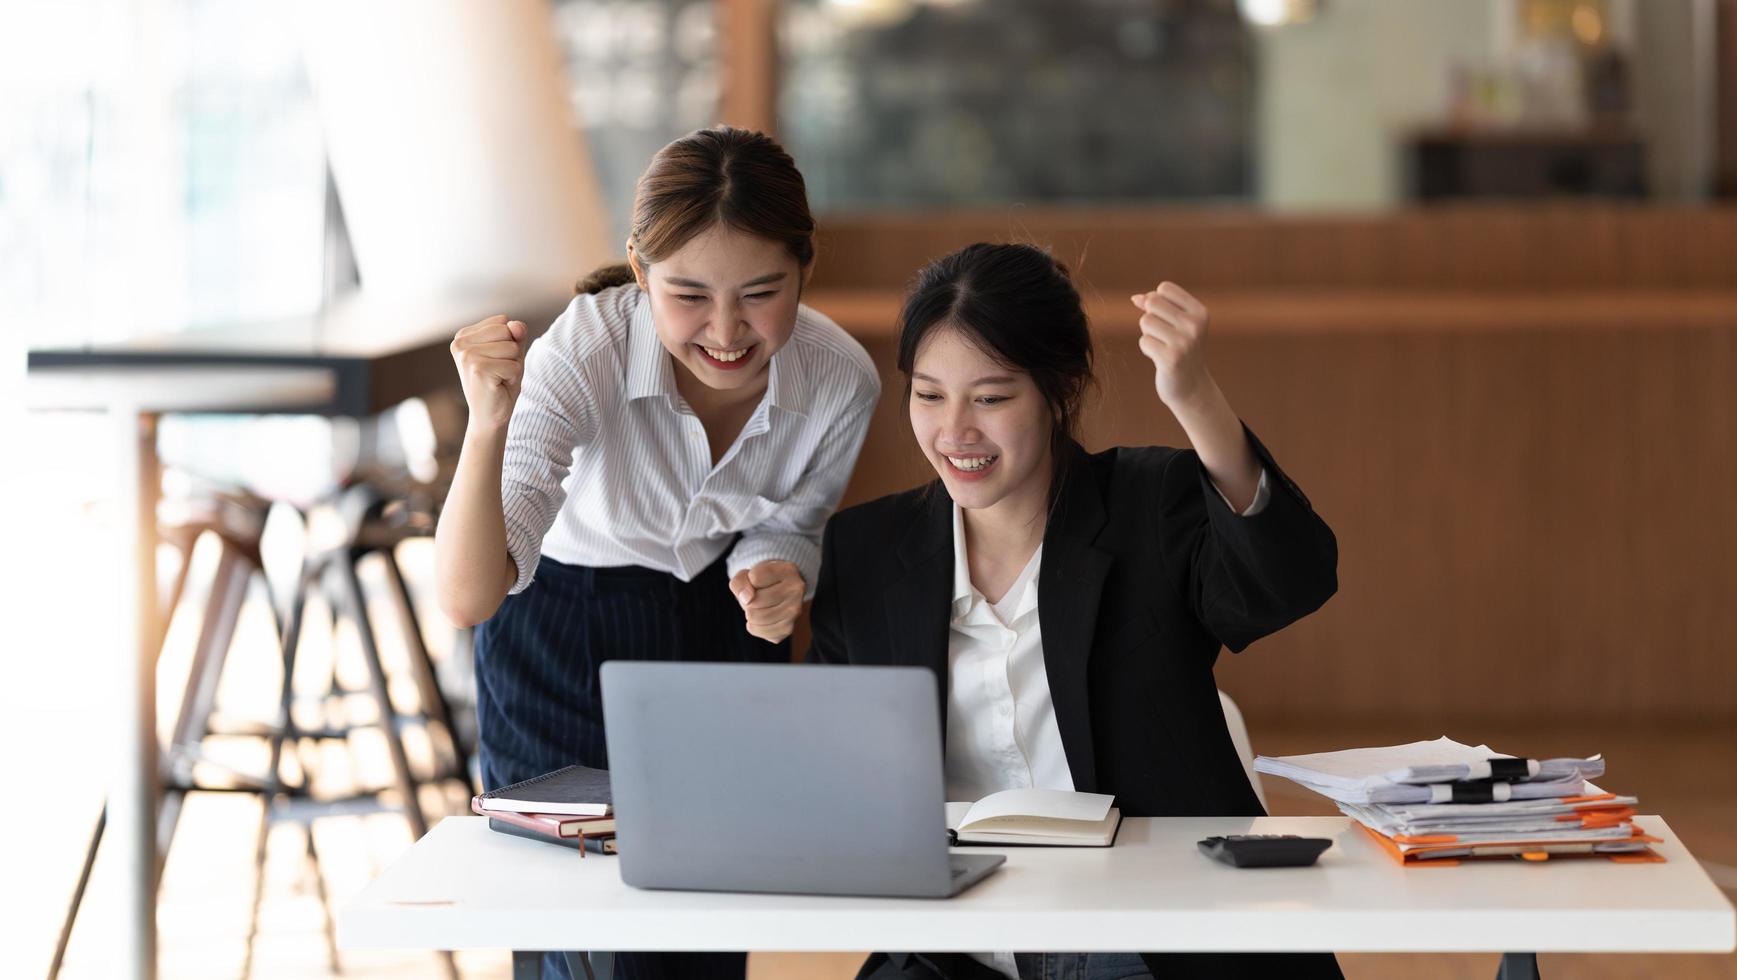 deux femmes asiatiques enthousiastes de l'équipe commerciale célèbrent ensemble la victoire de l'entreprise au bureau photo